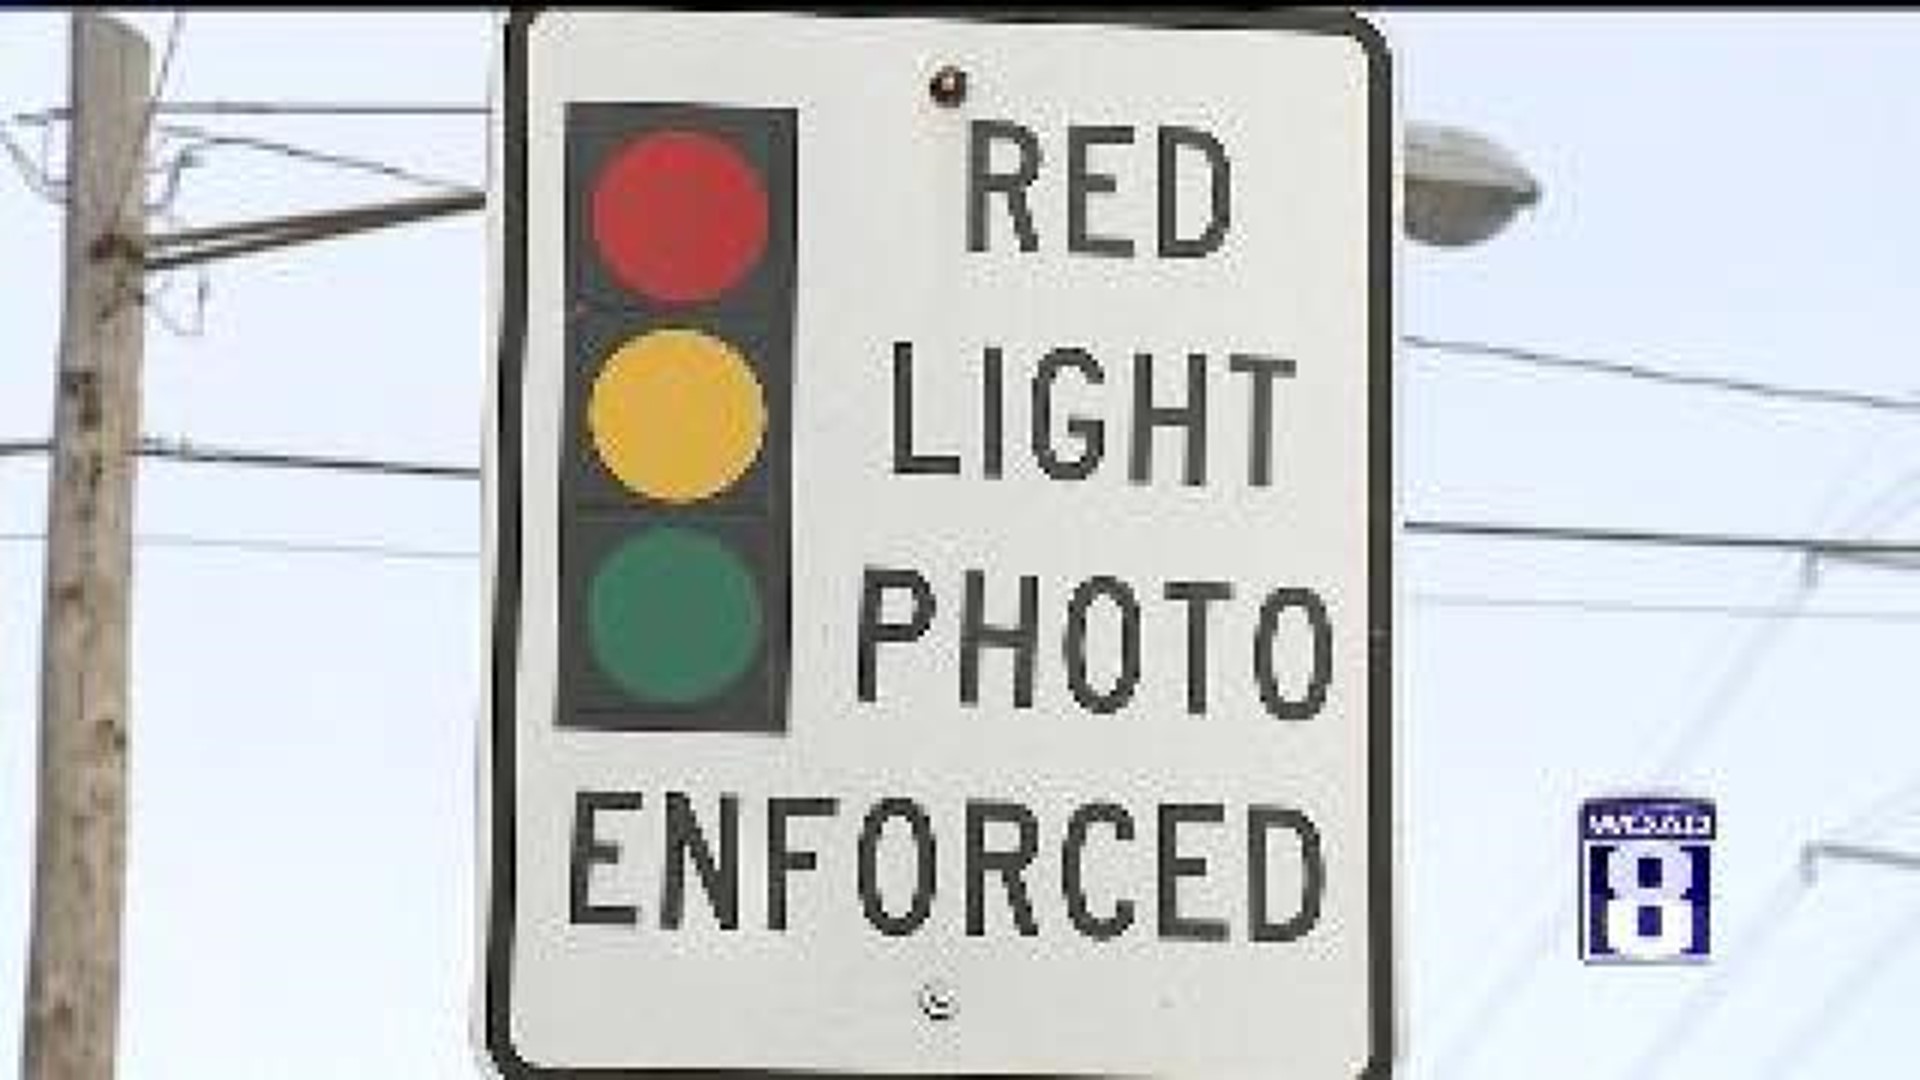 Red Light Camera Legislation